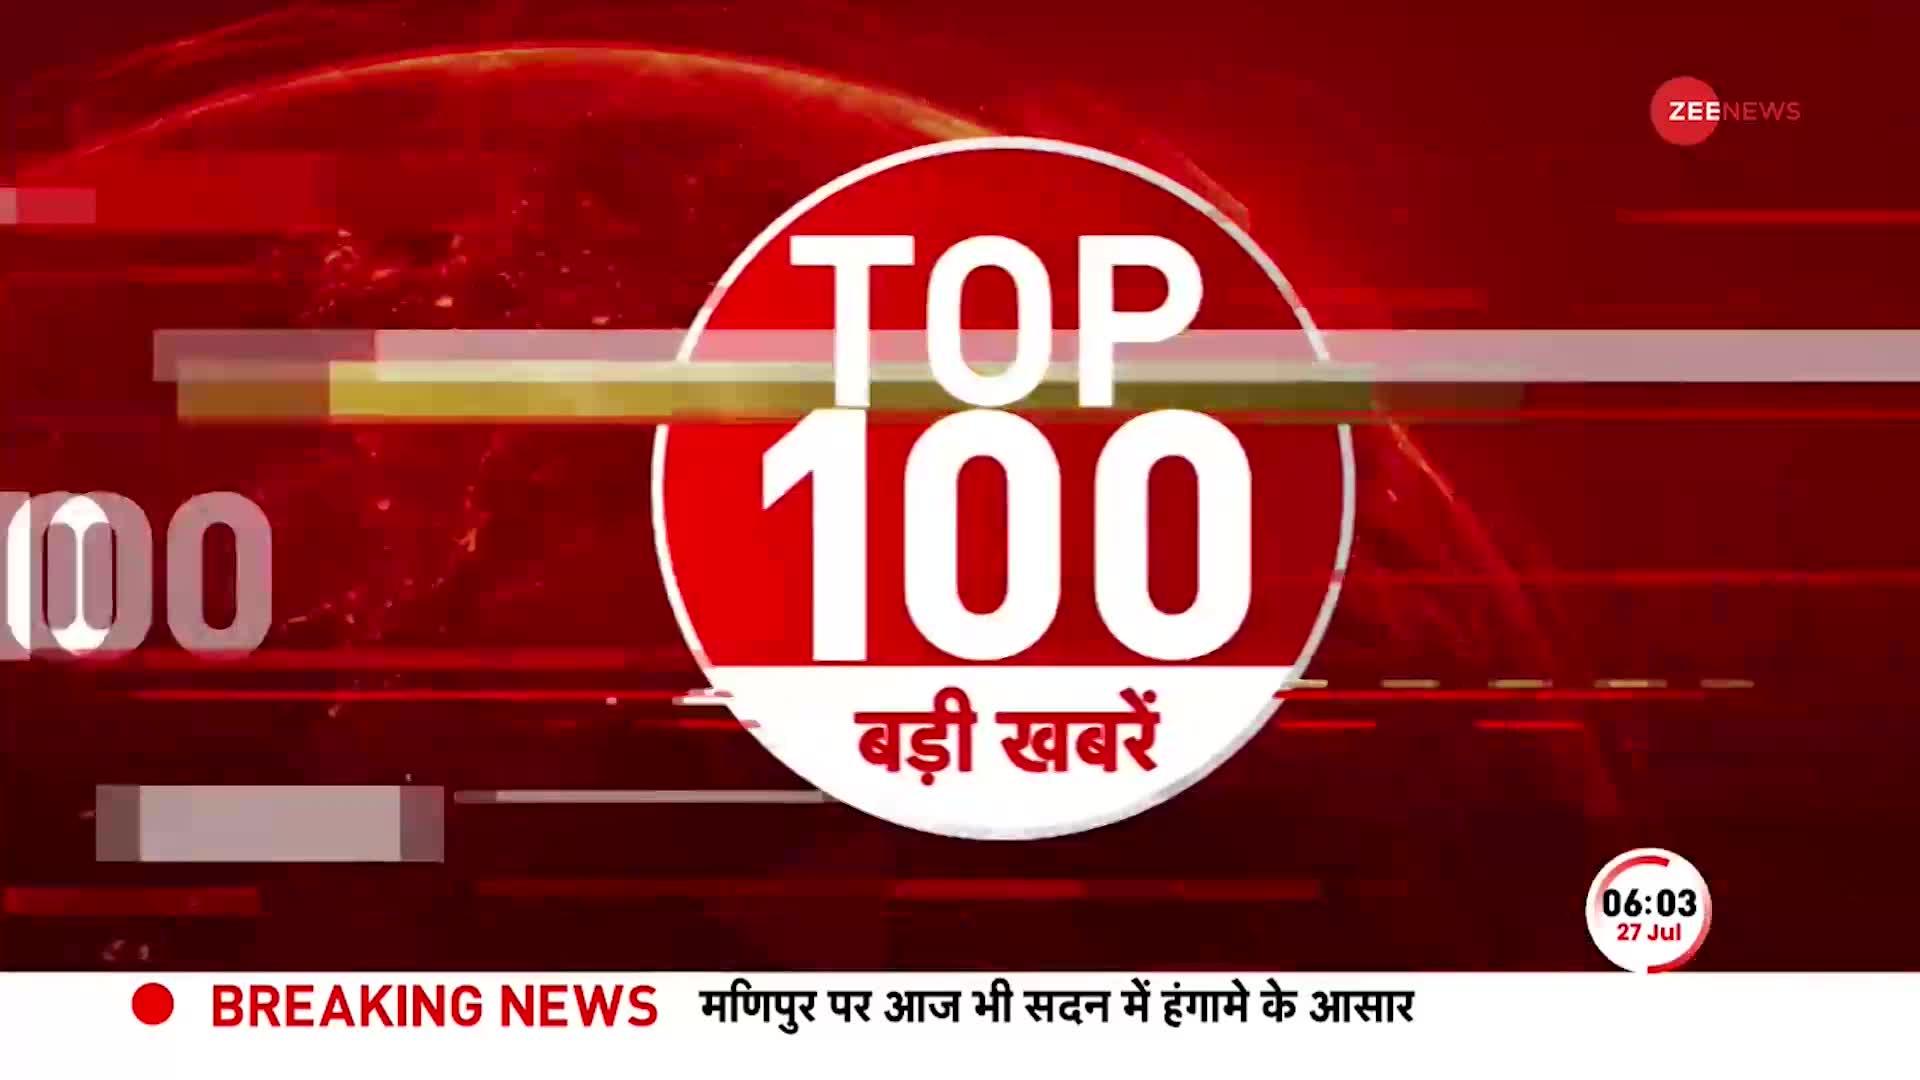 TOP 100: सुबह की 100 बड़ी खबरें सुपरफास्ट अंदाज में | Manipur violence